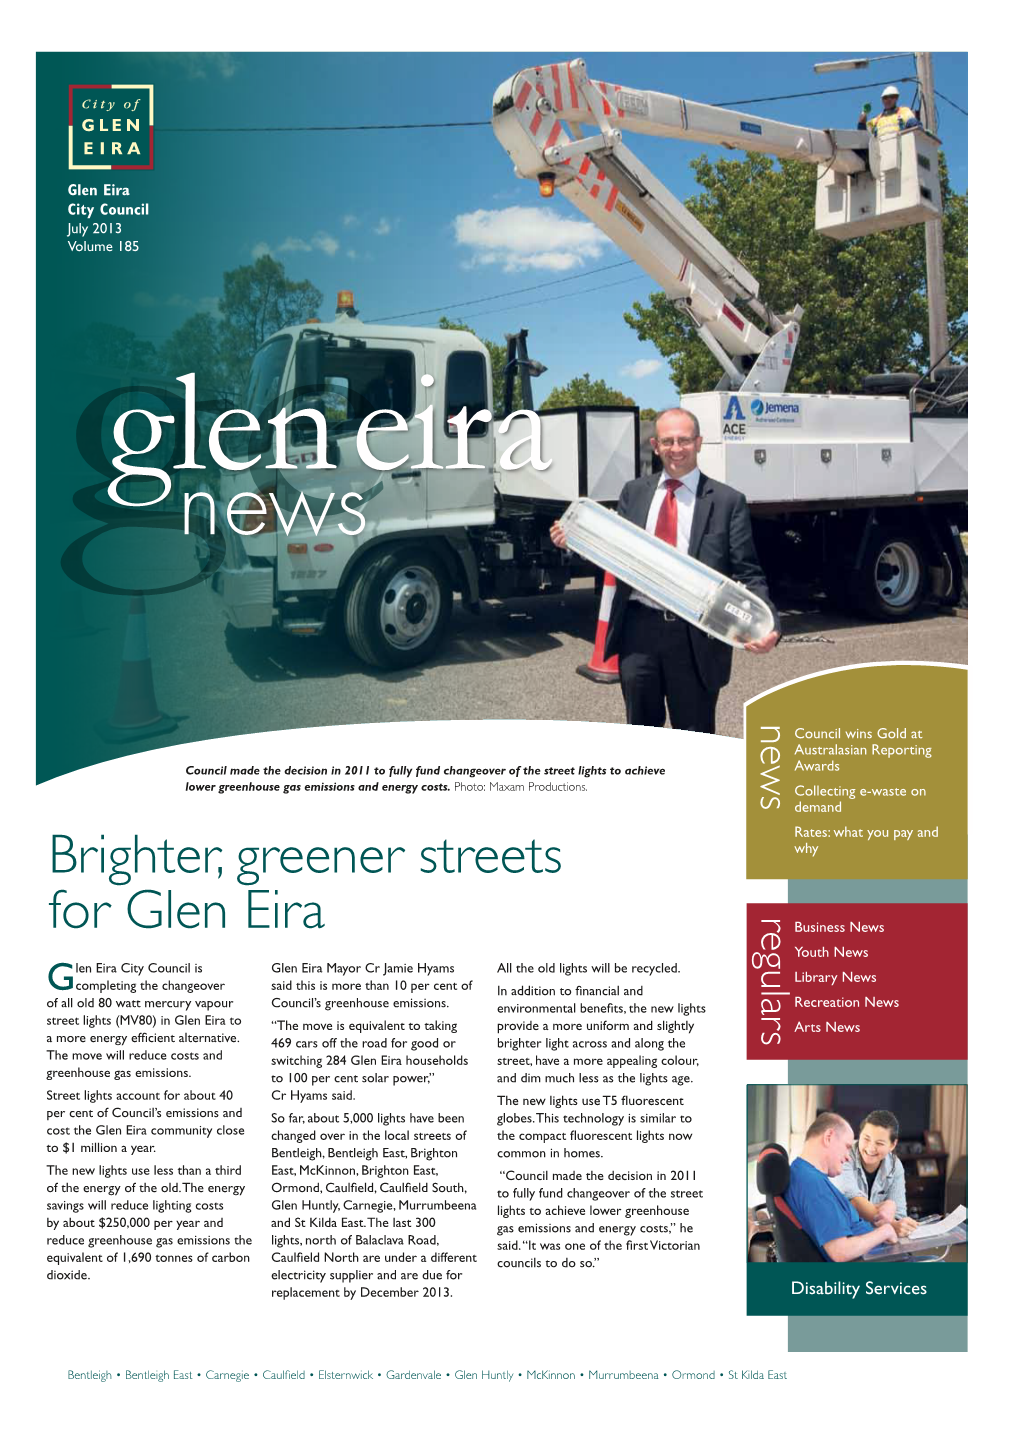 Brighter, Greener Streets for Glen Eira